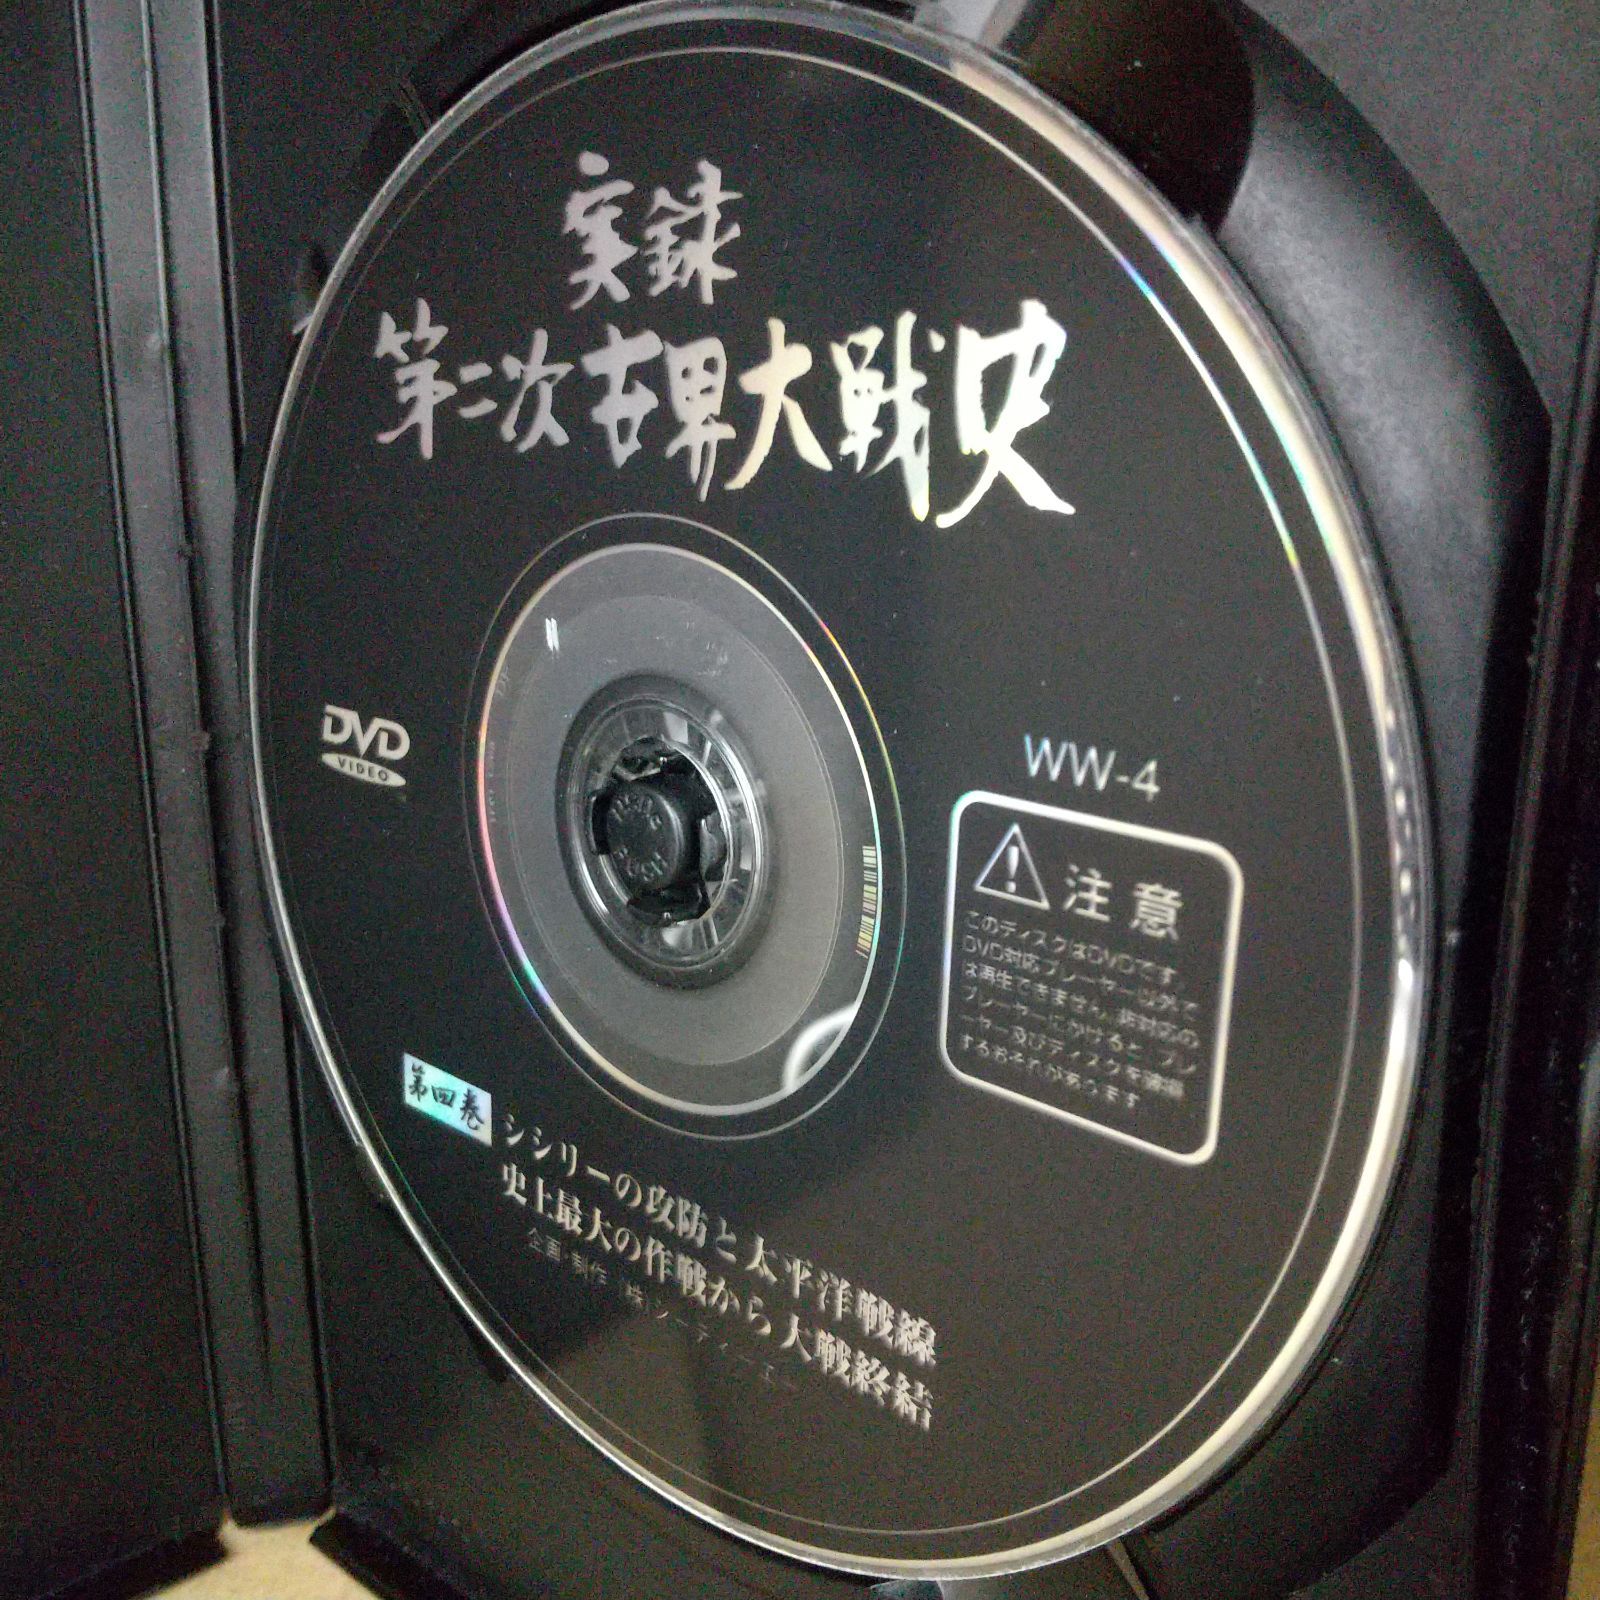 実録 第二次世界大戦史 第四巻 レンタル落ち 中古 DVD ケース付き - メルカリ